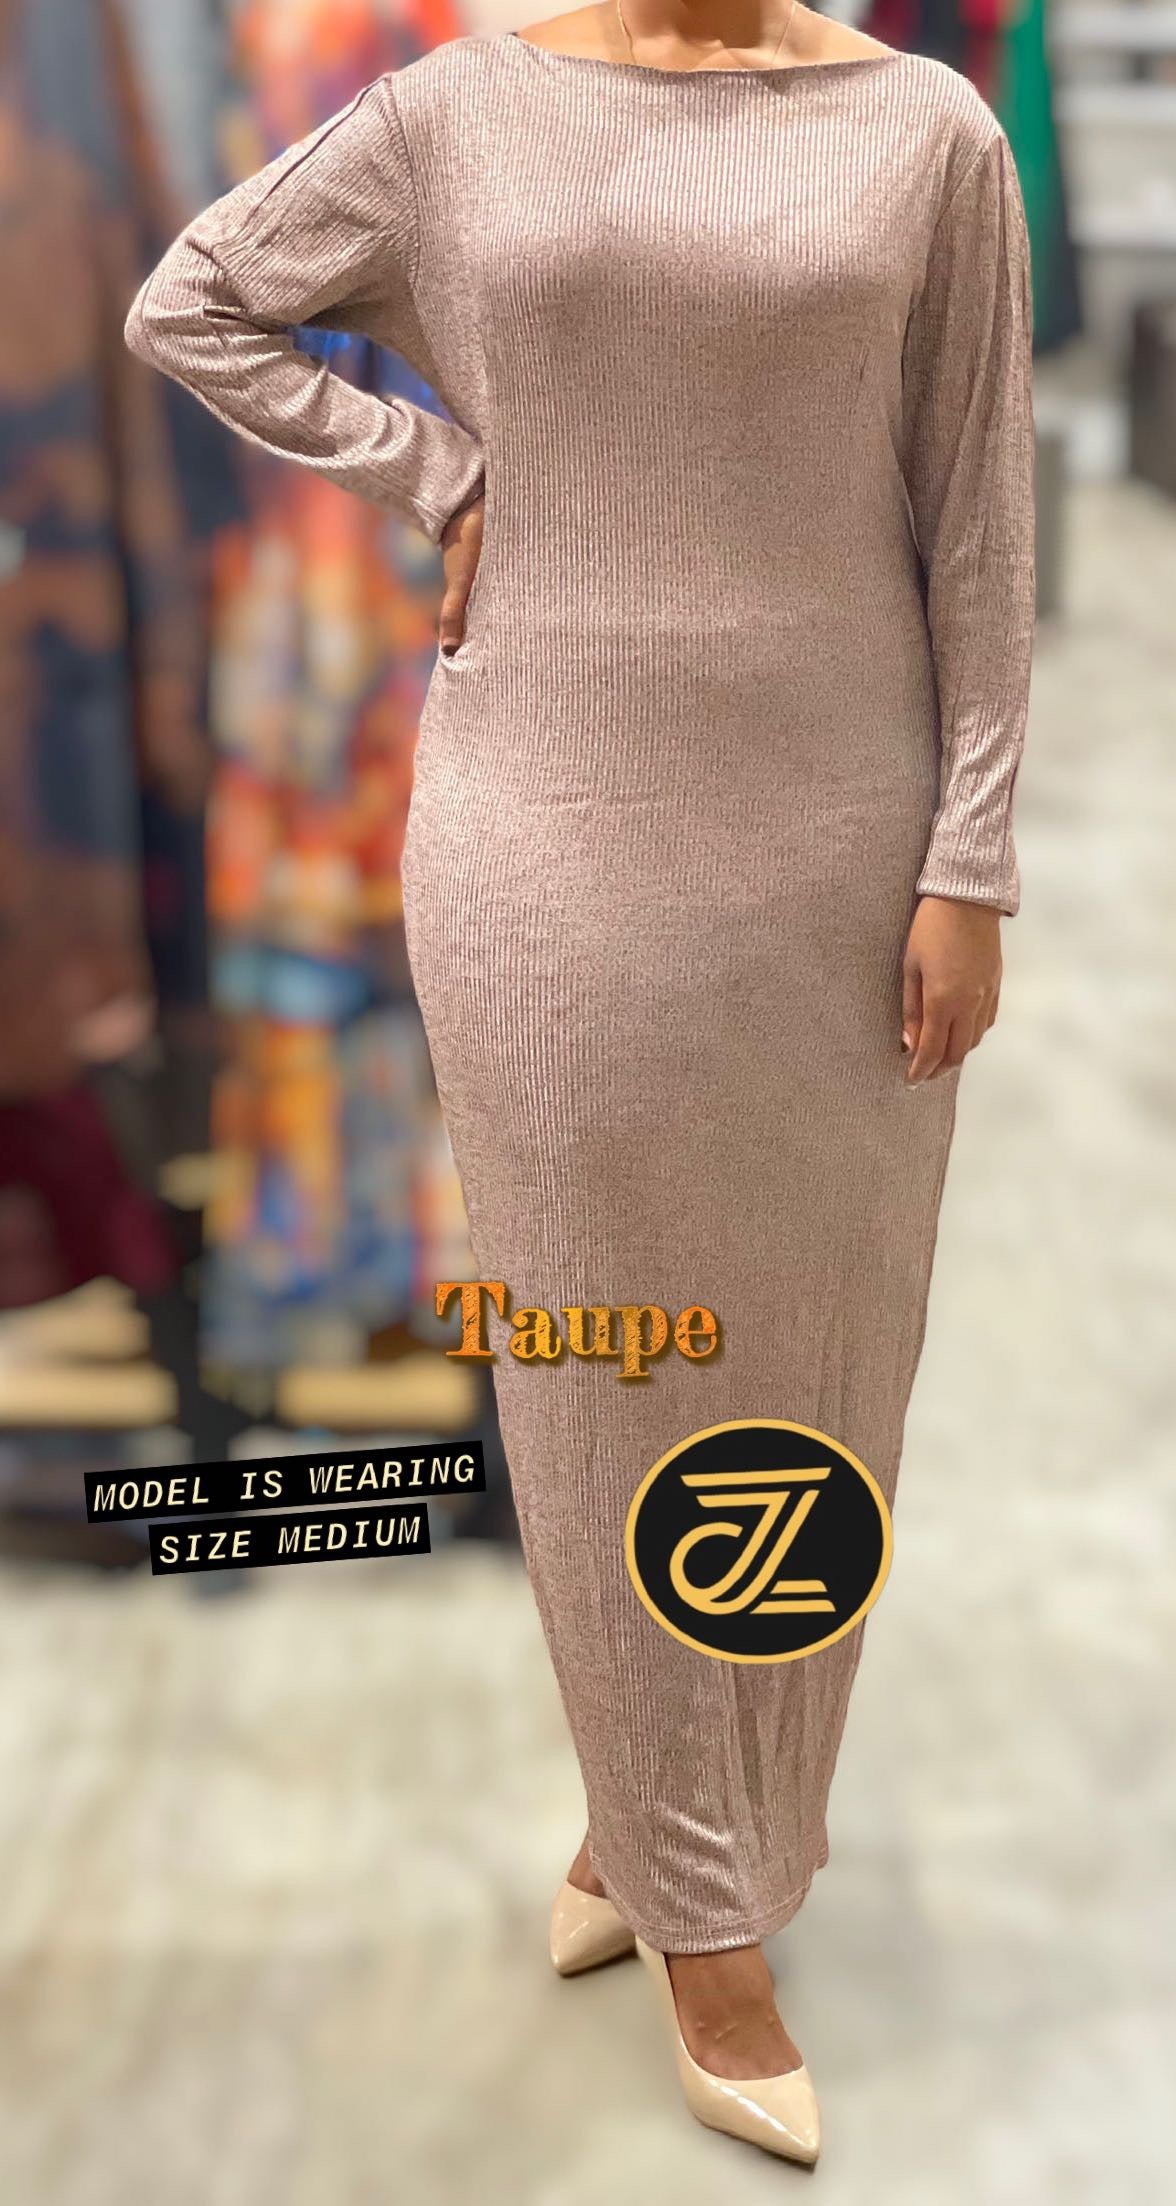 Grace Dress - ZIZI Boutique